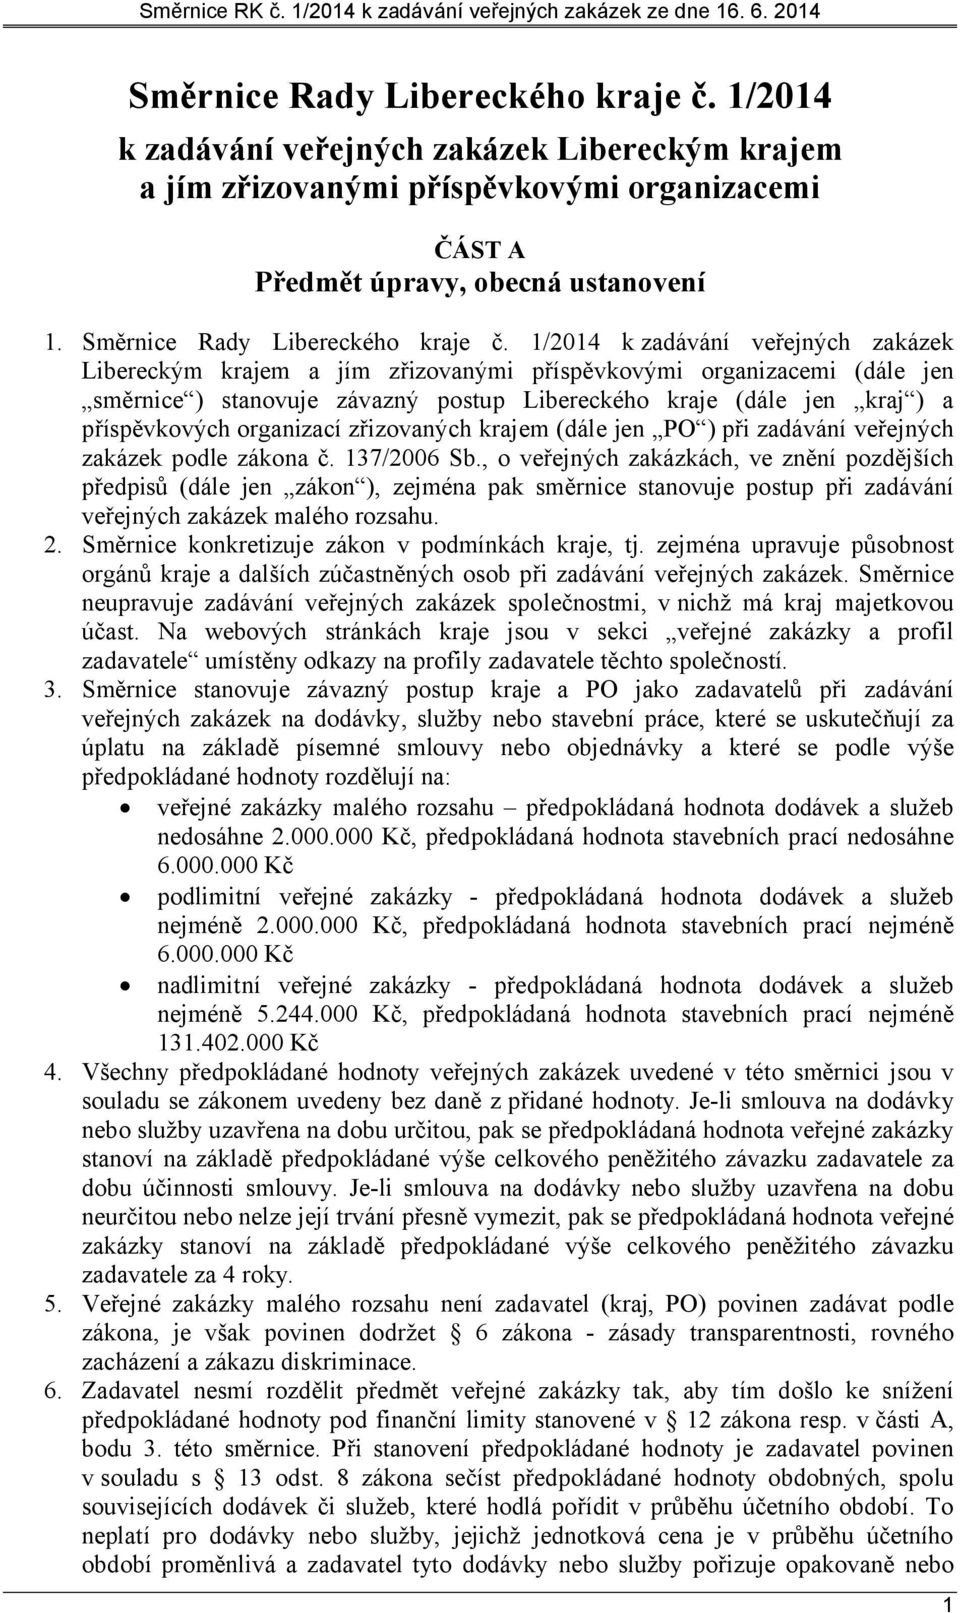 1/2014 k zadávání veřejných zakázek Libereckým krajem a jím zřizovanými příspěvkovými organizacemi (dále jen směrnice ) stanovuje závazný postup Libereckého kraje (dále jen kraj ) a příspěvkových